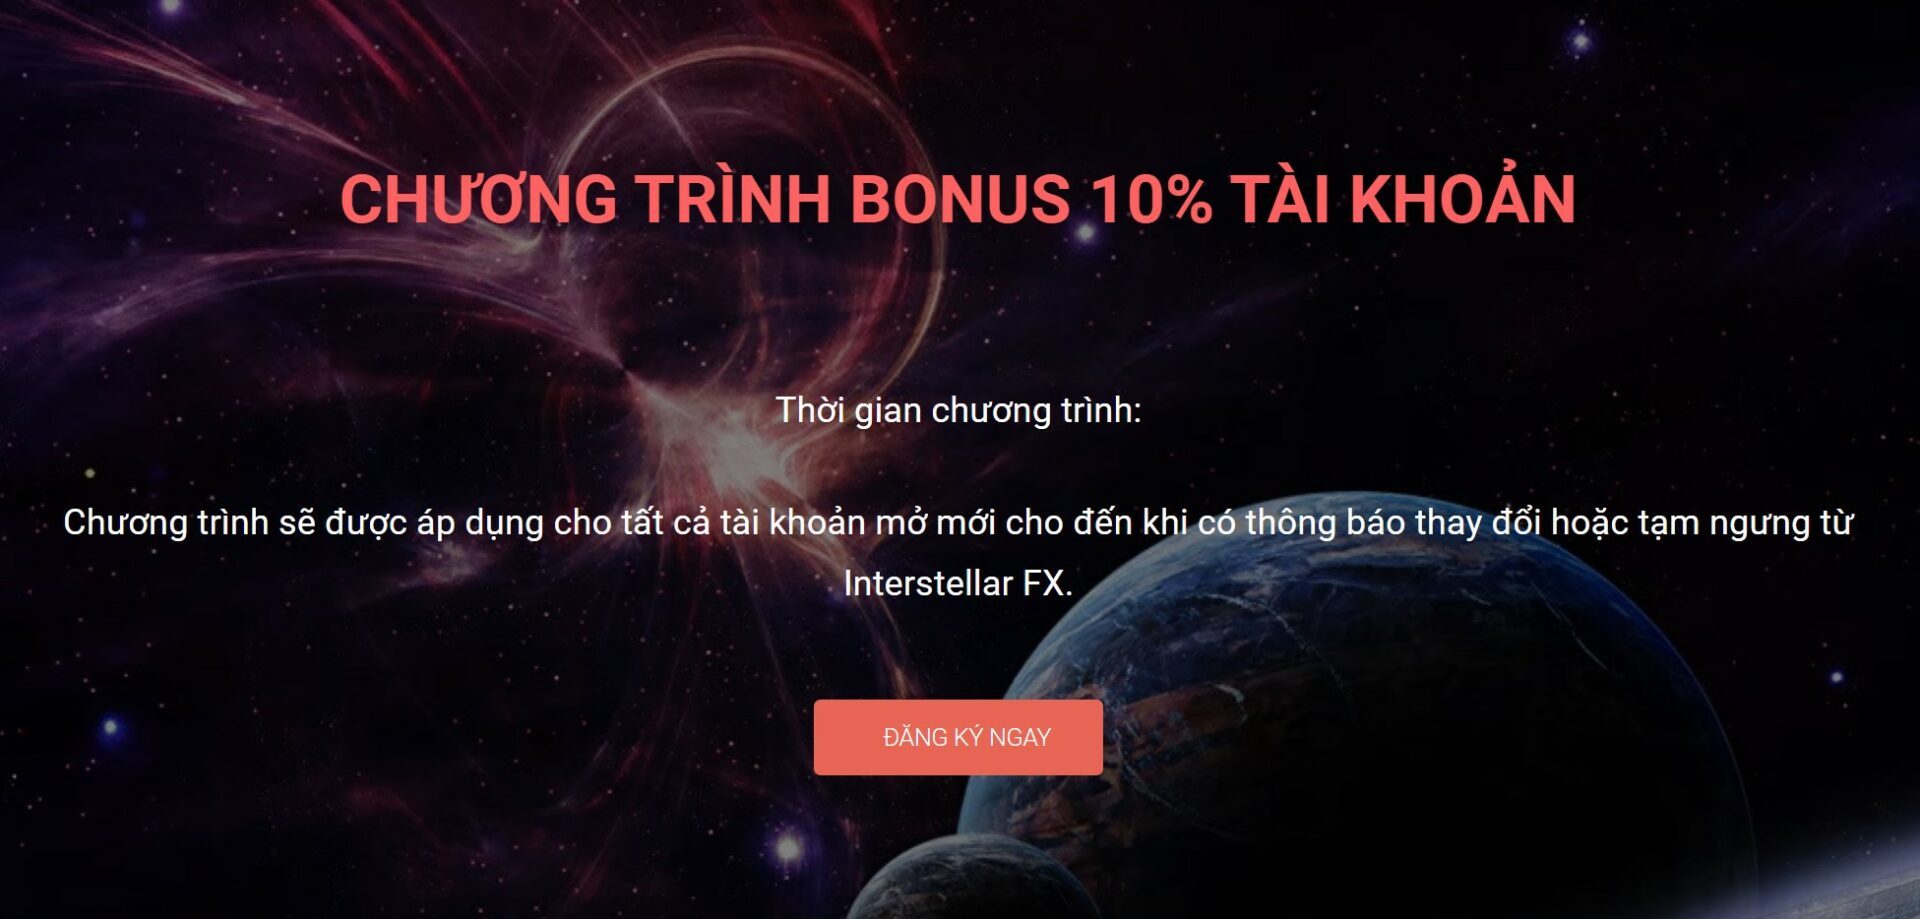 Chương trình tặng thưởng Interstellar FX: Bonus 10% tài khoản